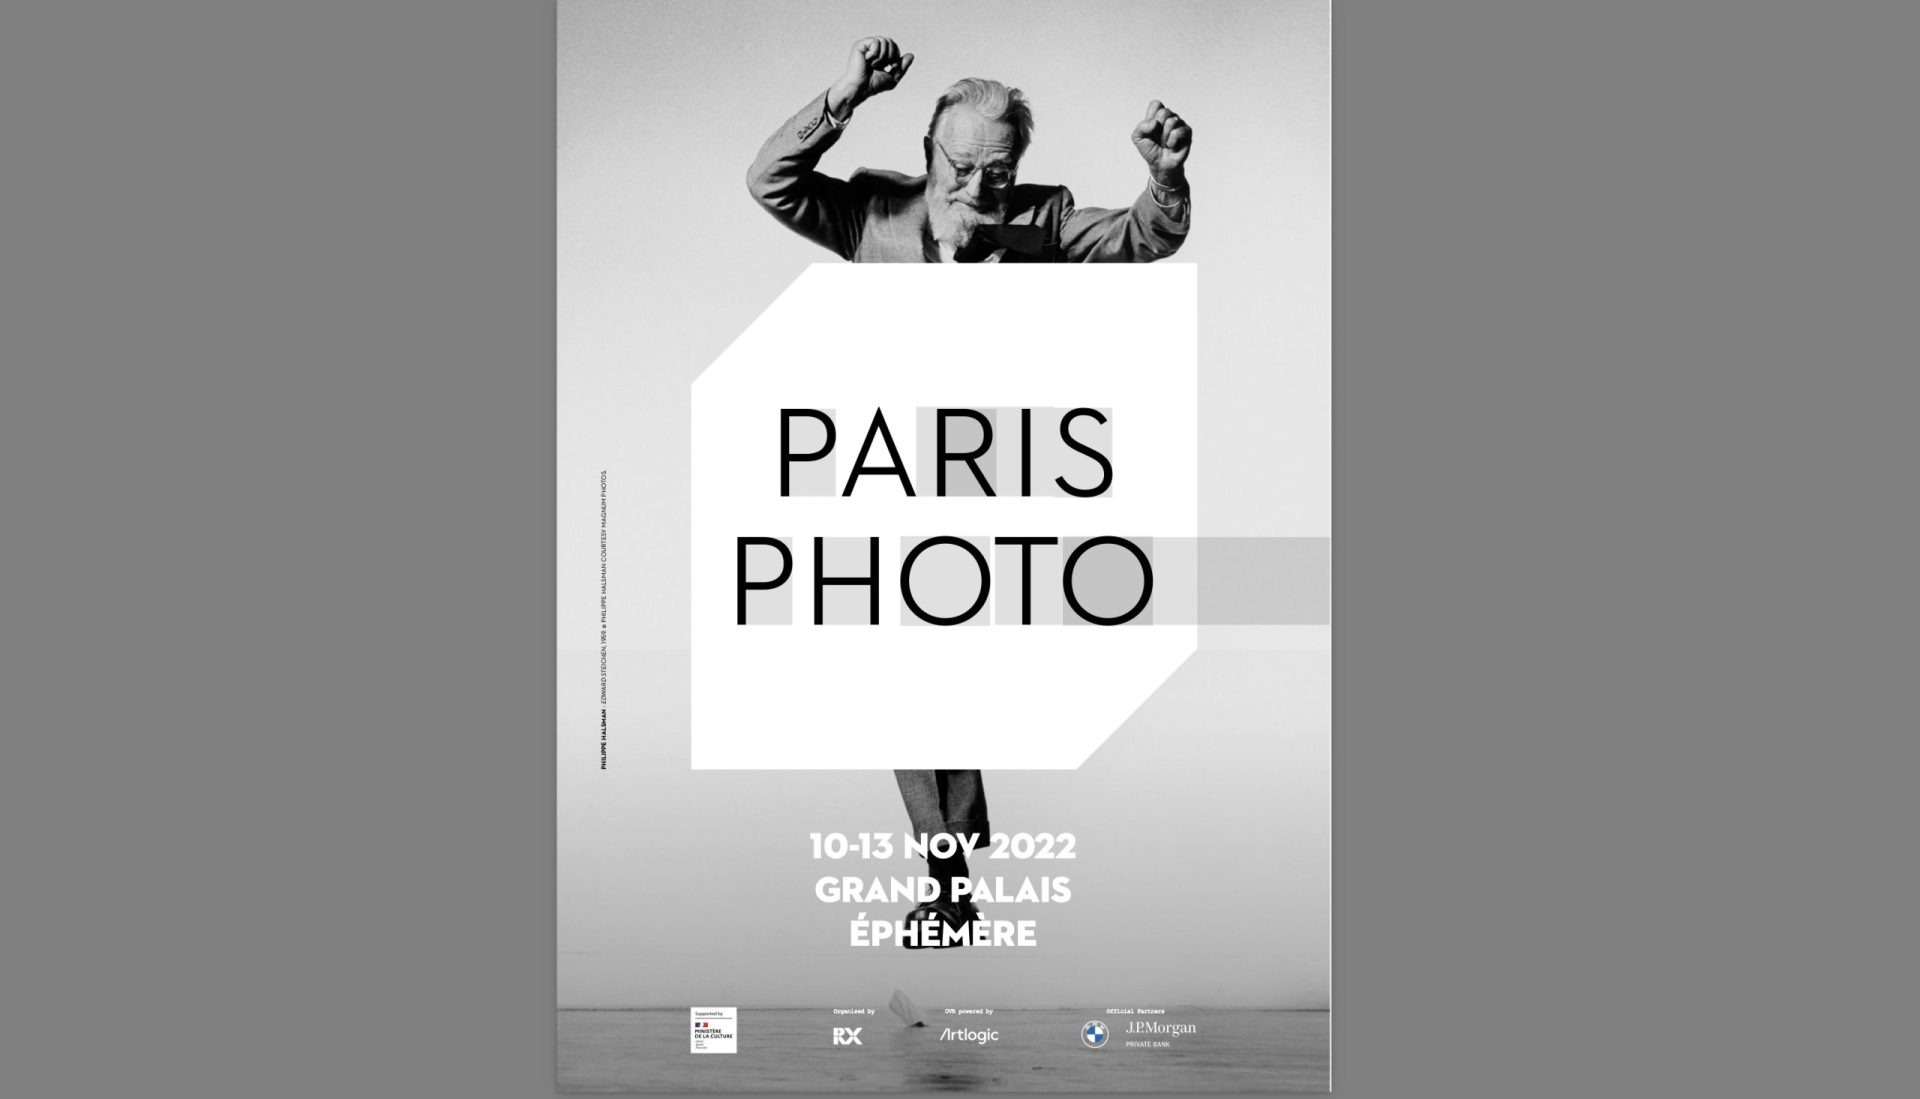 PARIS PHOTO 2022